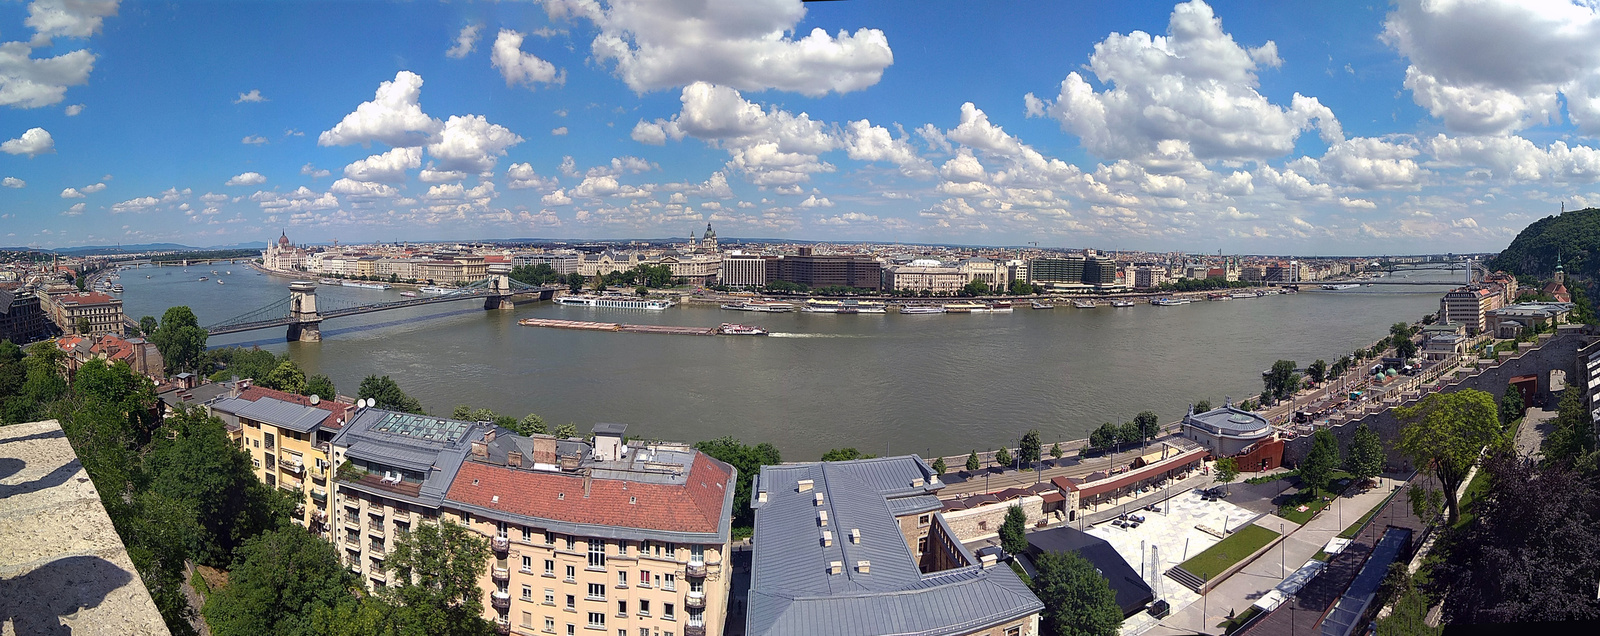 A megunhatatlan Budapesti panoráma